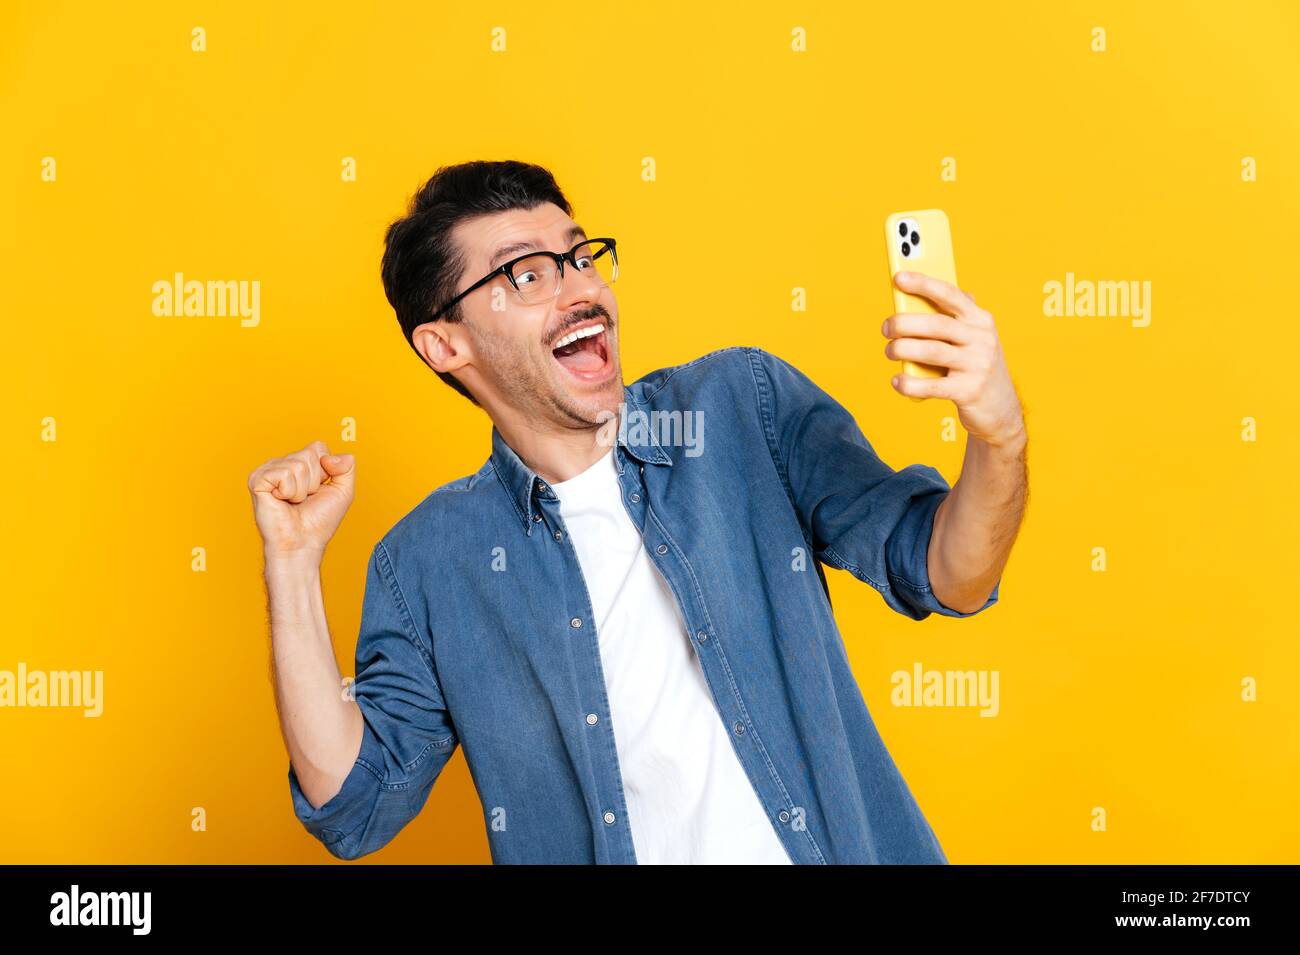 Glücklich fröhlich aufgeregt stilvolle kaukasischen Kerl hält Smartphone, erhalten unerwartete Nachrichten, gewinnen, steht auf isolierten orangefarbenen Hintergrund, fröhlichen Gesichtsausdruck, toothy Lächeln, gestikulieren mit Faust Stockfoto